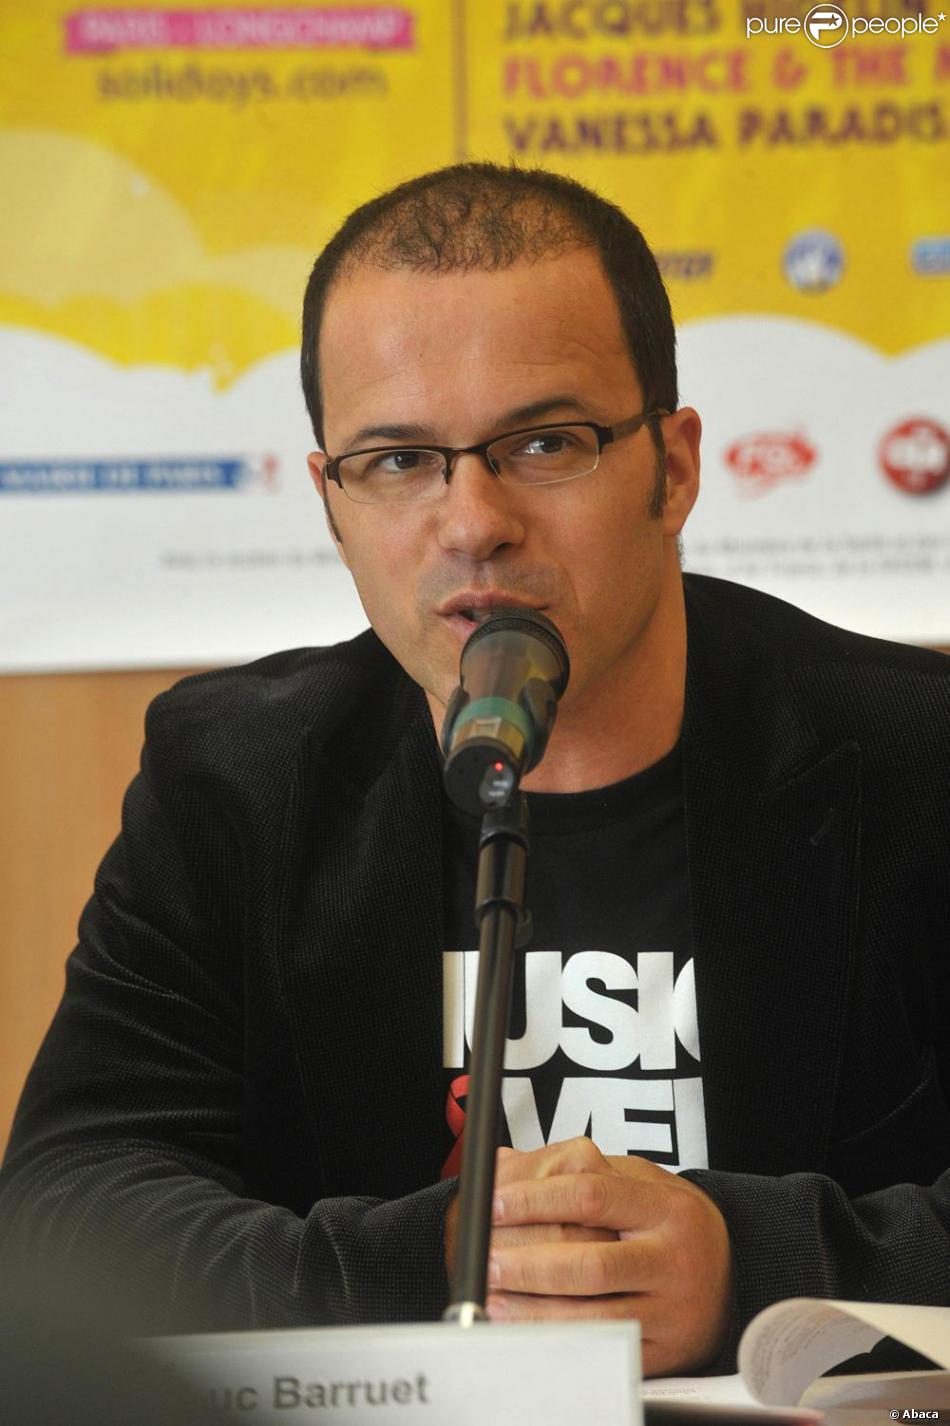 Luc Barruet à la conférence de presse du festival Solidays, le 7 juin 2010.